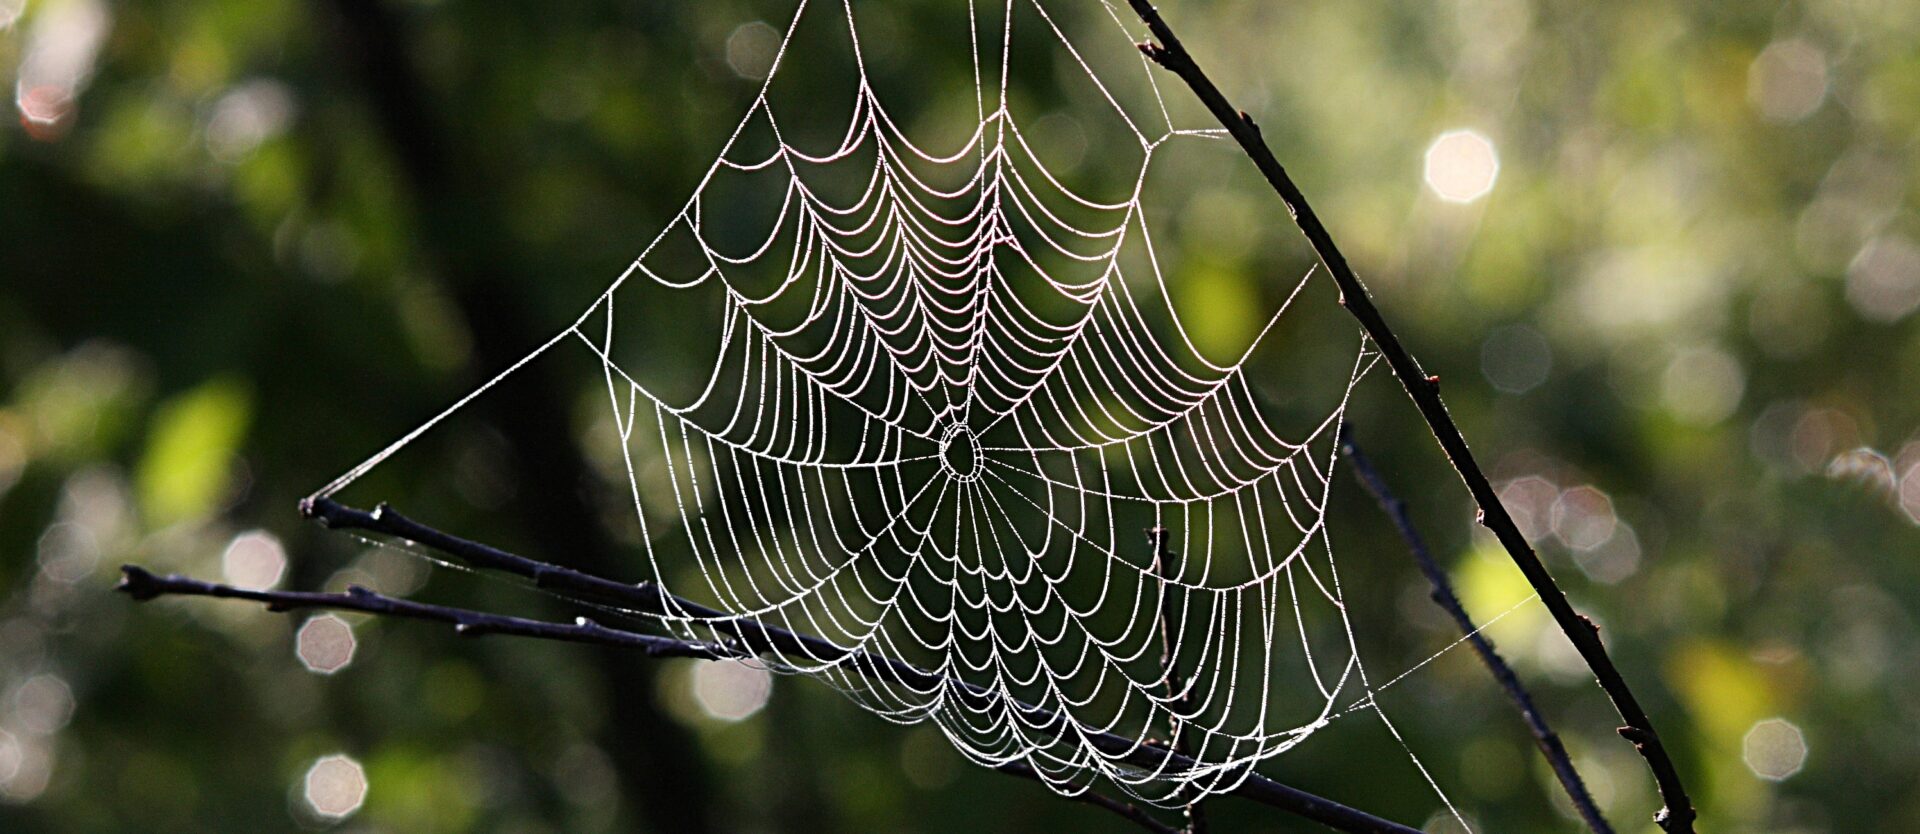 L'abus spirituel  se construit souvent comme une araignée tisse sa toile | wikimedia coomons caphas CC-BY-SA 3.0